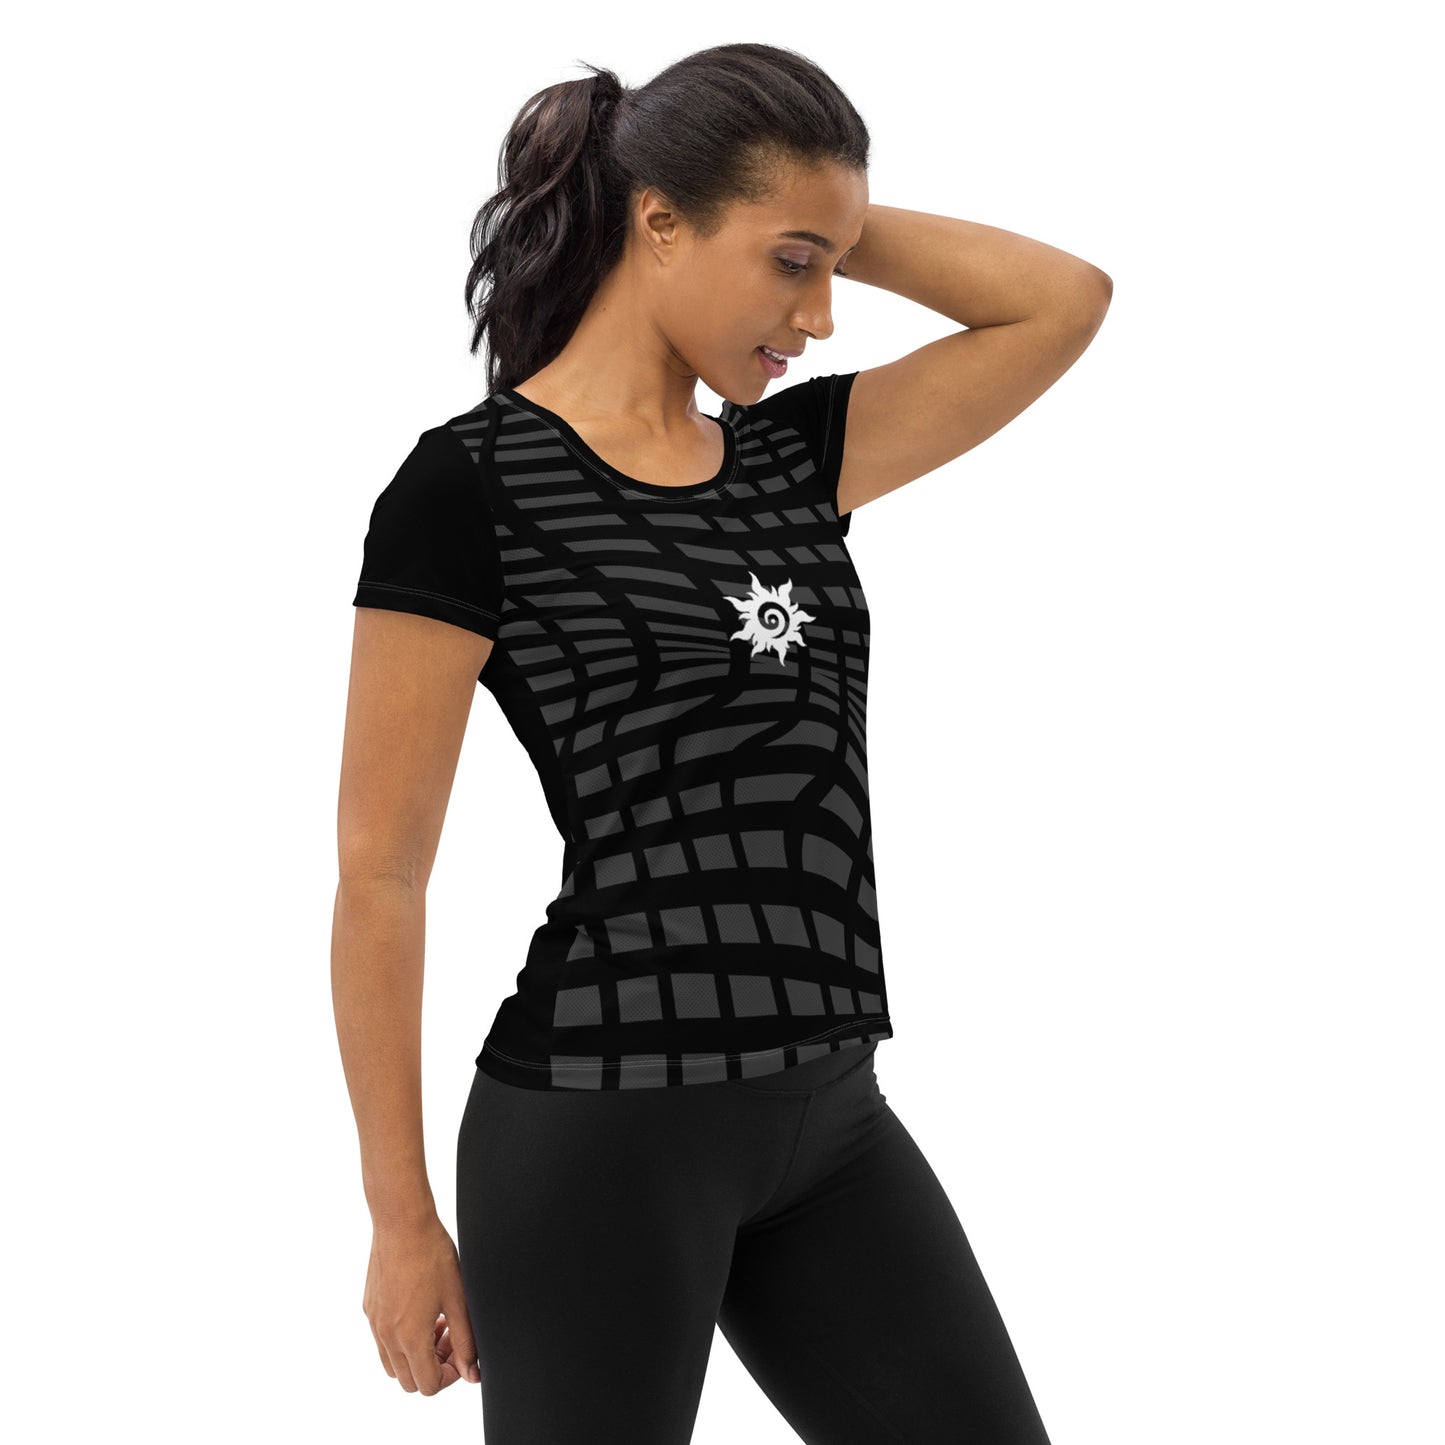 Women's Athletic T-shirt ActSun-Black